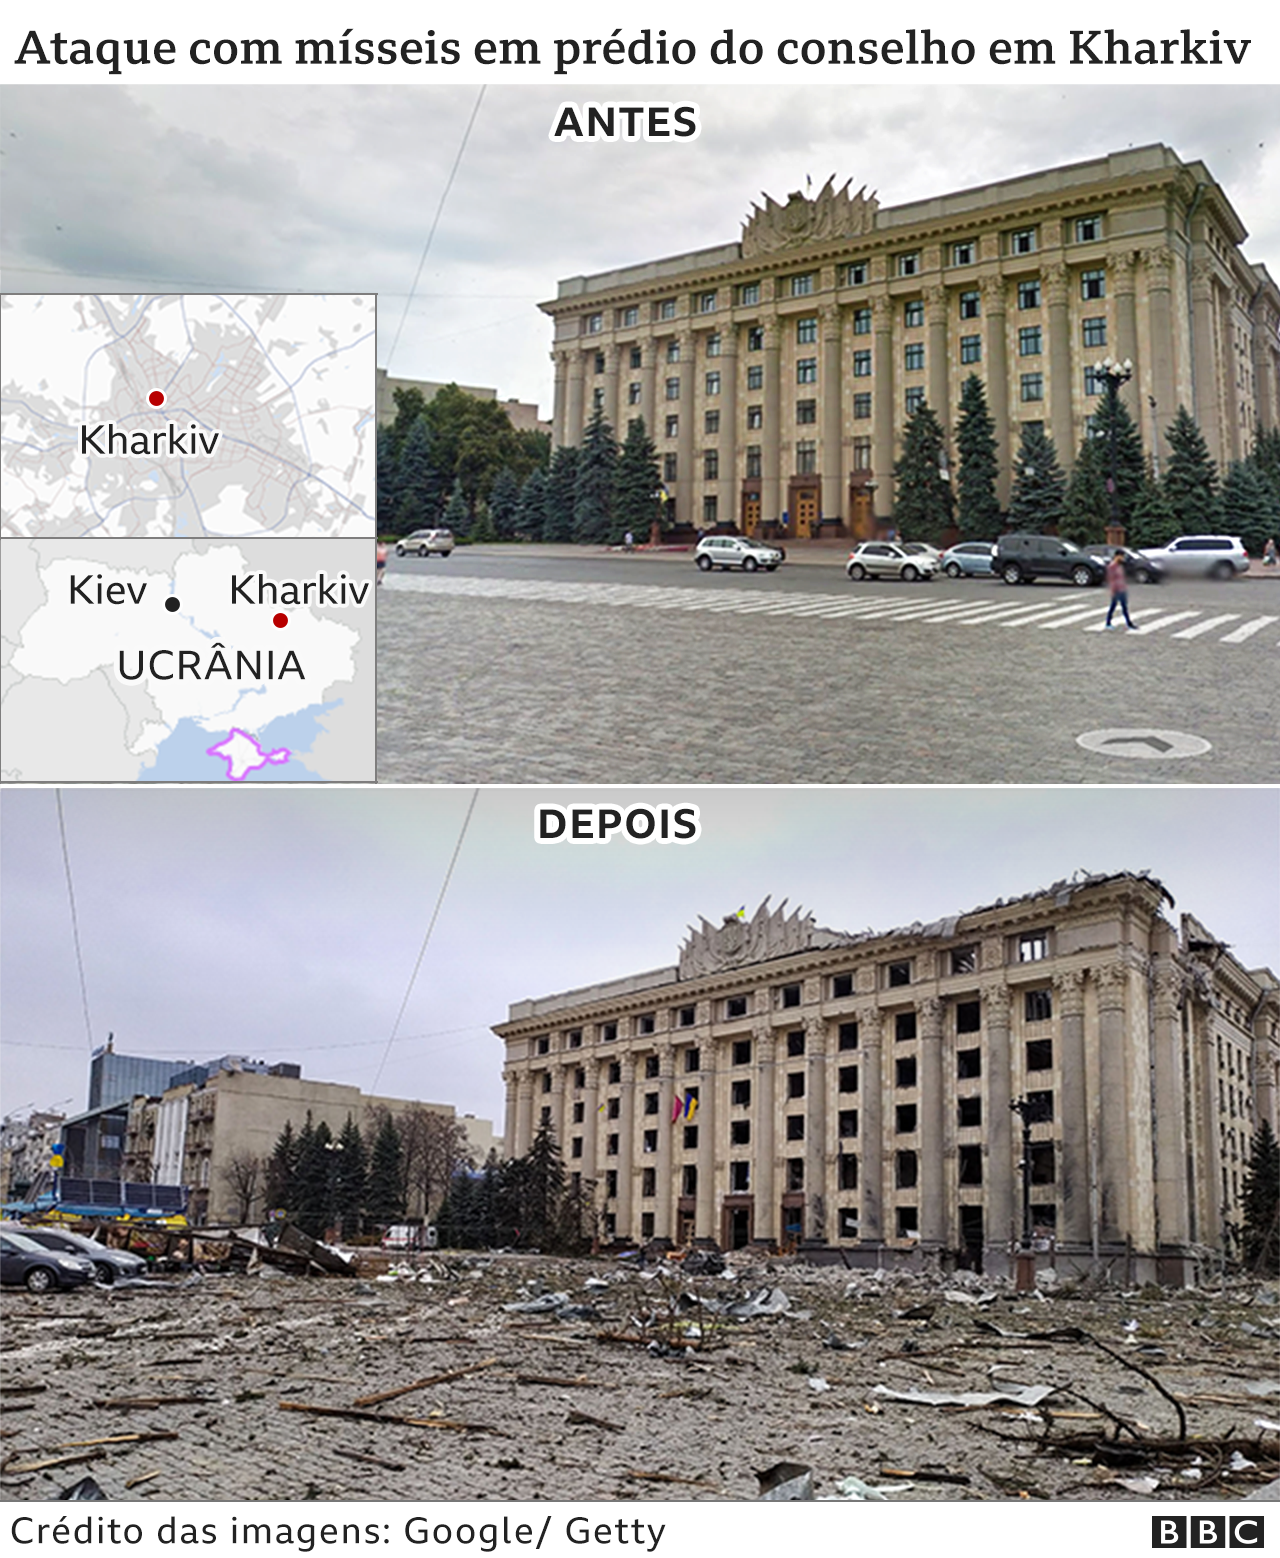 Guerra na Ucrânia: imagens de antes e depois mostram a destruição com  bombardeios russos - BBC News Brasil